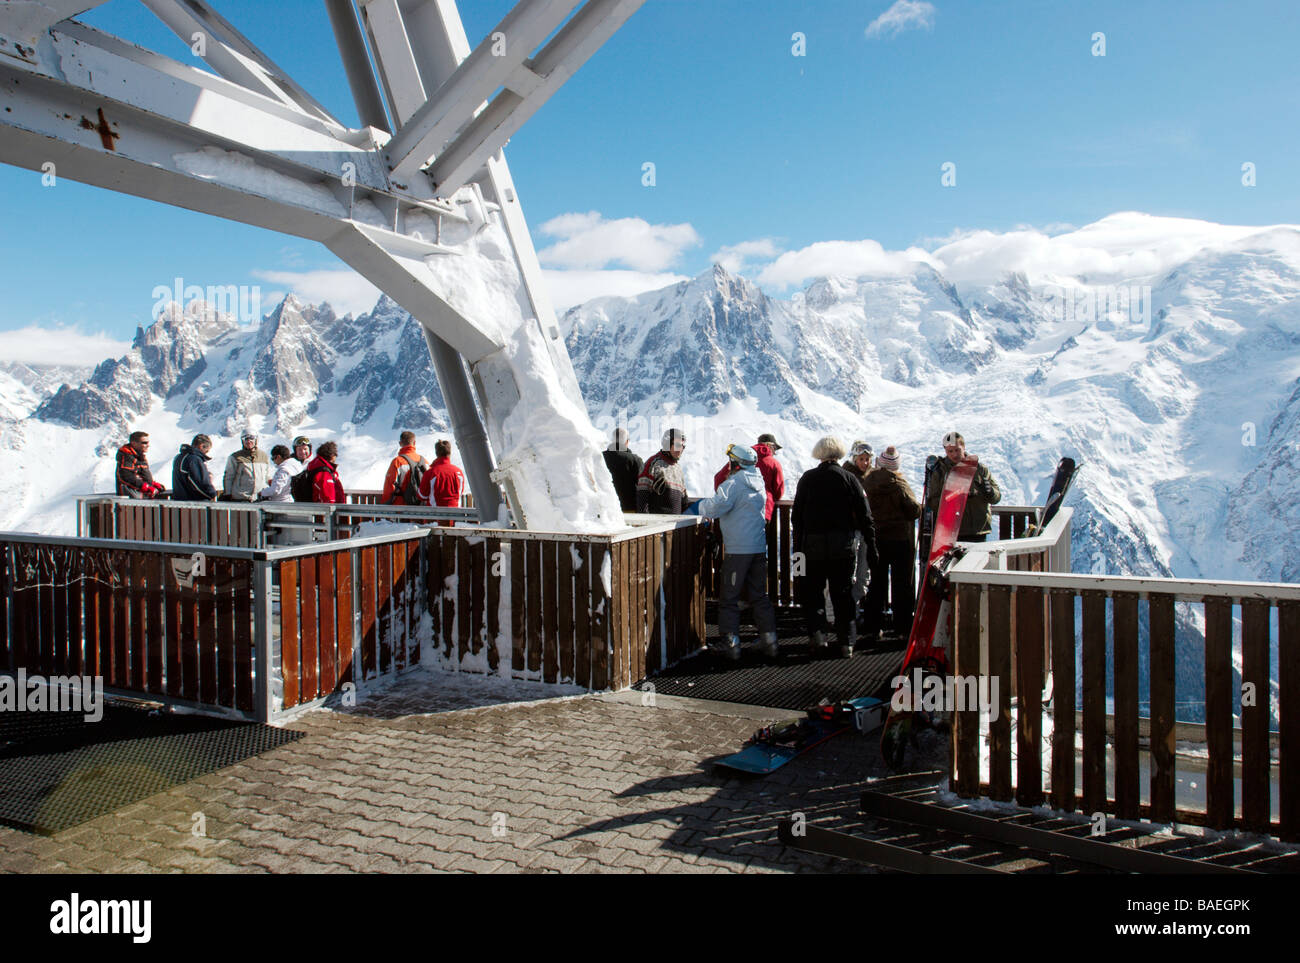 La gente a Le Brevent top. Il massiccio del Monte Bianco in background. Le Brevent ski resort, Chamonix, Francia Foto Stock